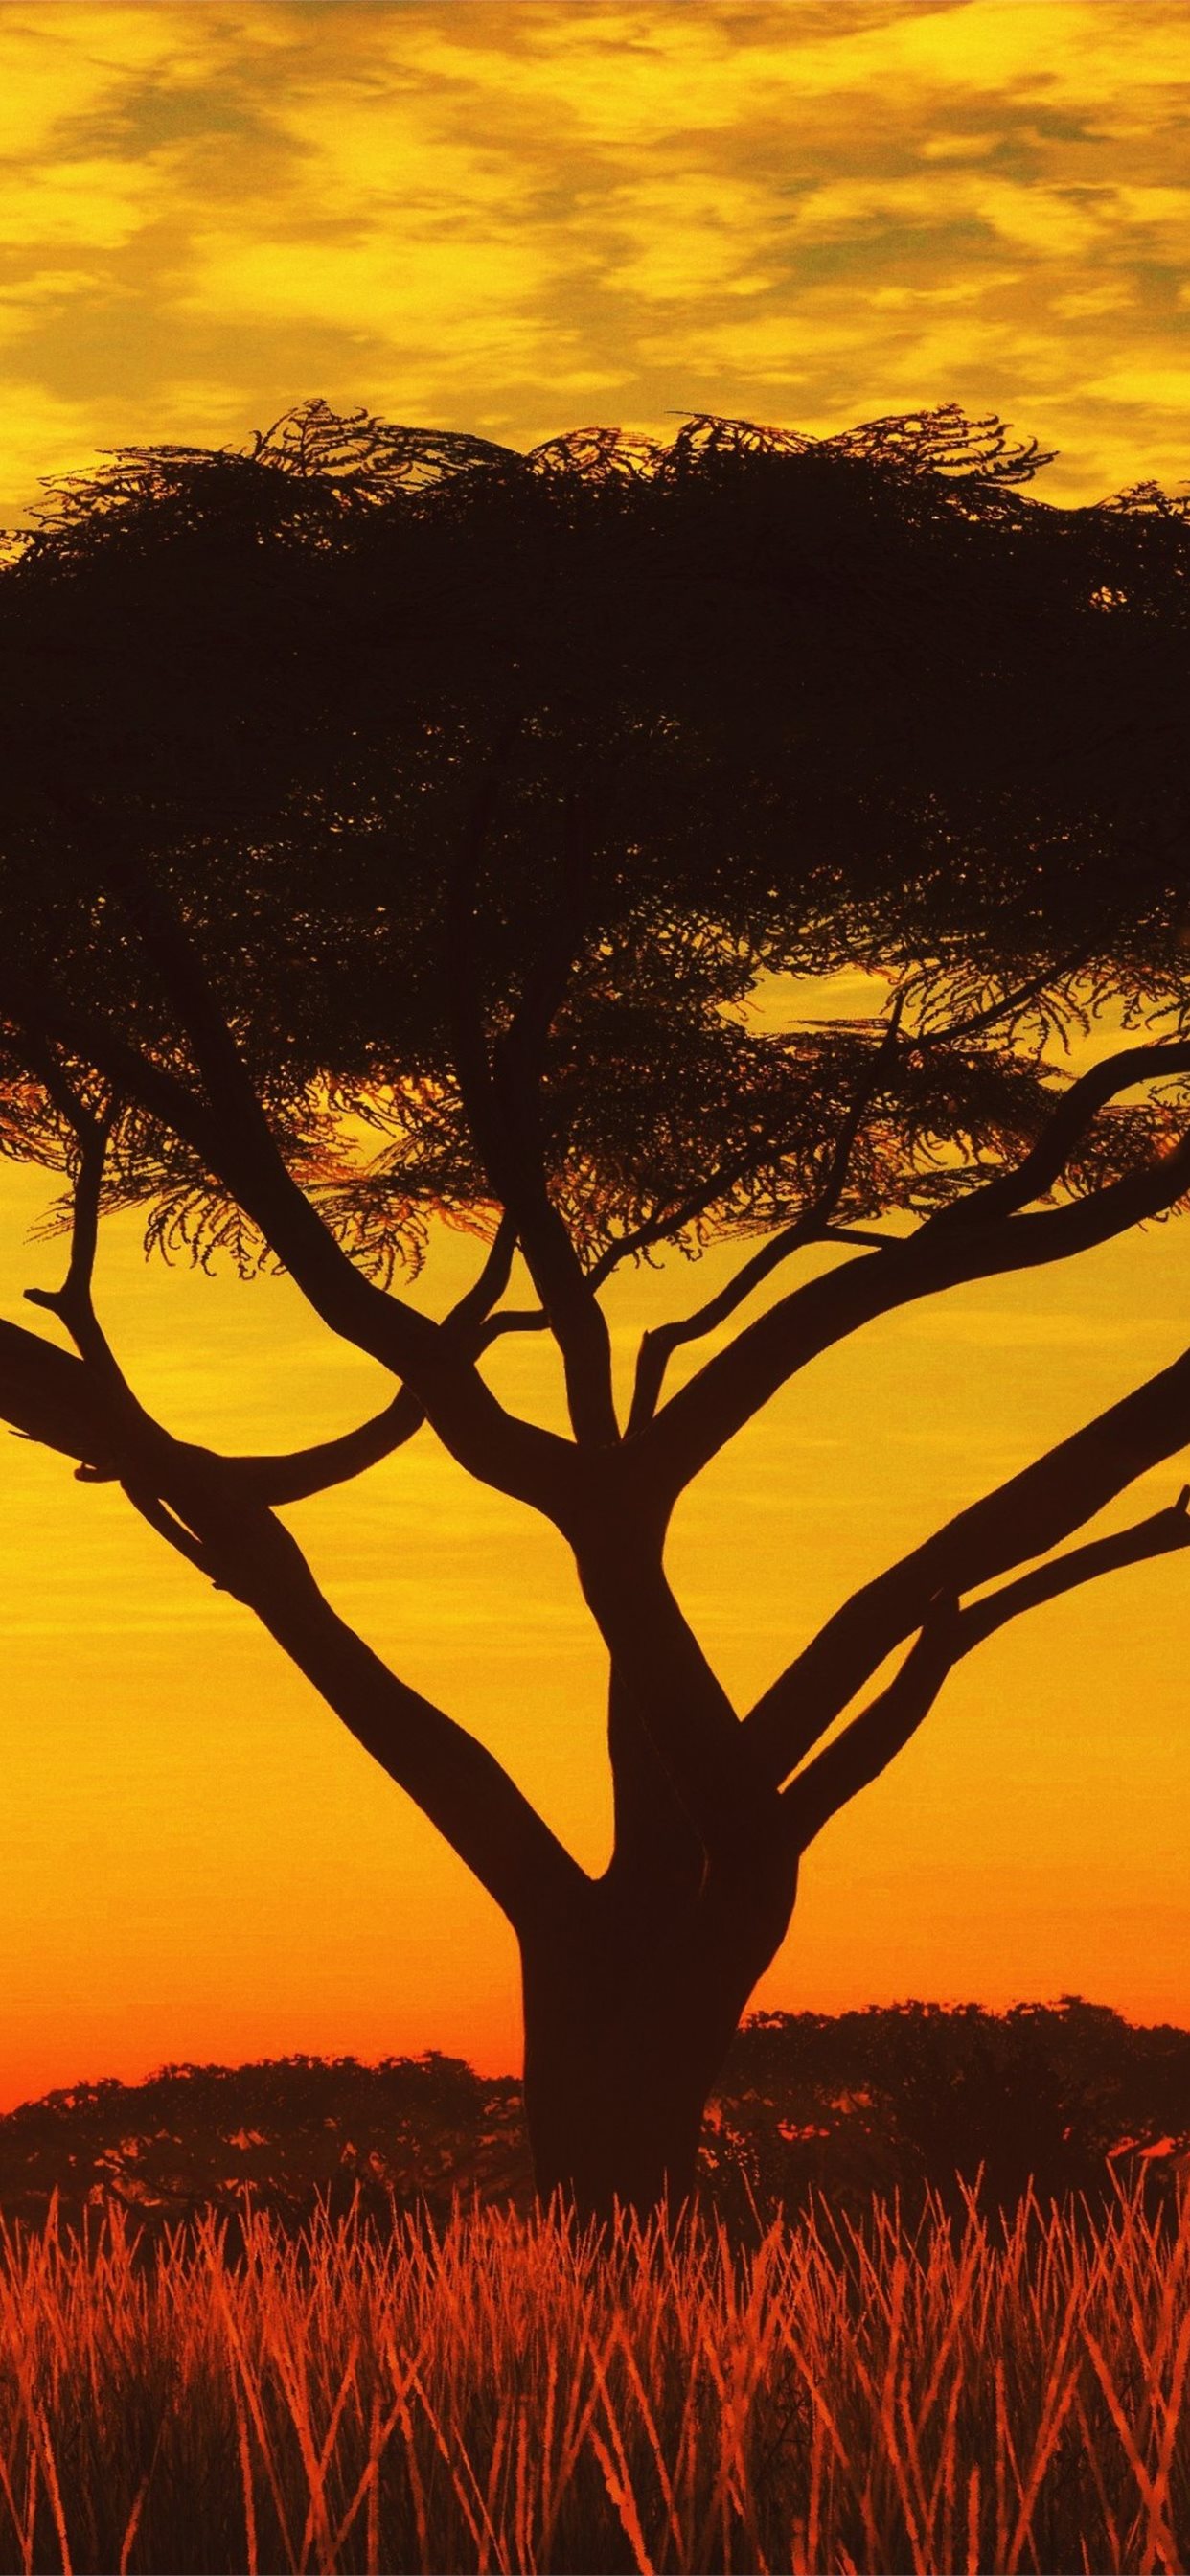 Serengeti Sunset 4k Samsung Galaxy Note S9 S8 iPhone X